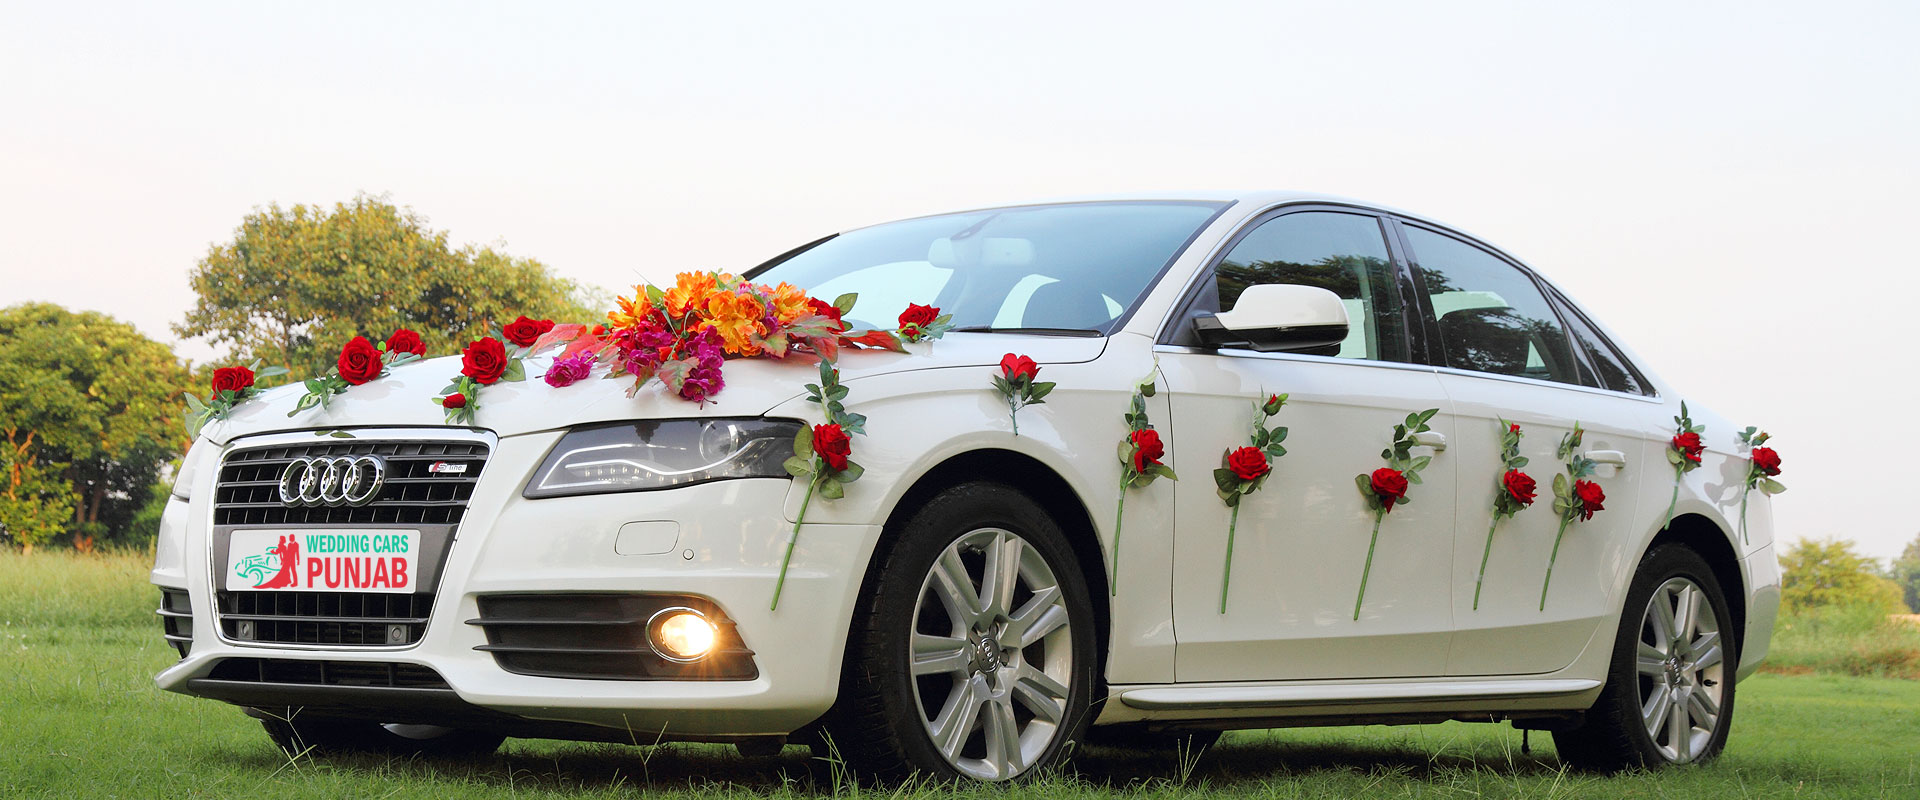 Audi Wedding cars Punjab wedding cars punjab Wedding Cars Punjab audi car banner